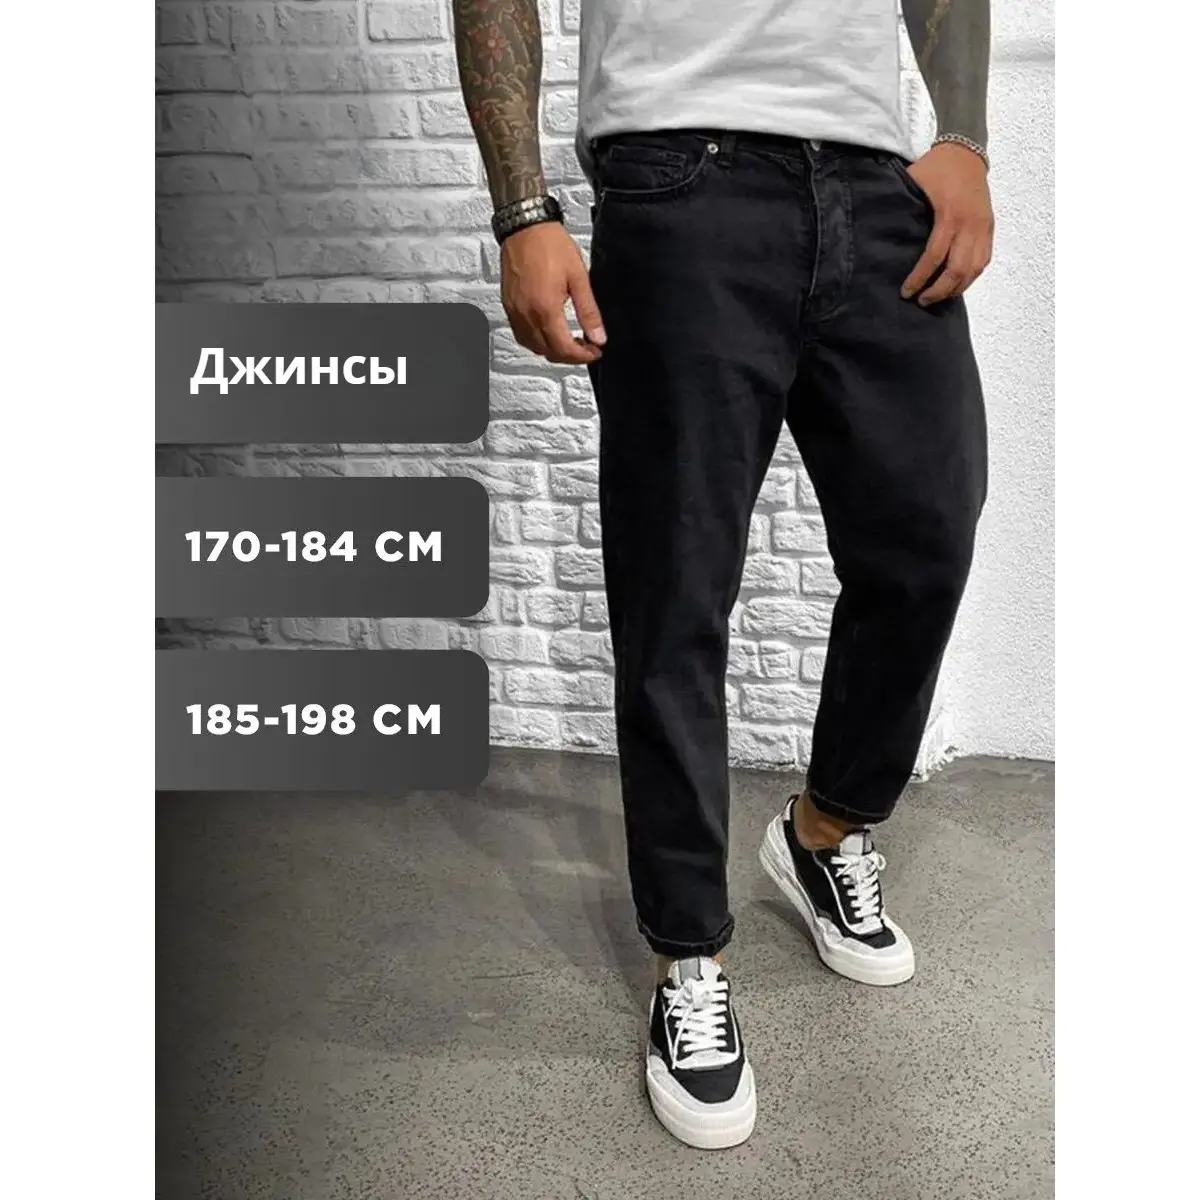 الجنز الروسي الأكثر مبيعًا والأكثر شهرة بتصميم جديد عالي الجودة بسعر الجملة حسب الطلب من المصنع جينز كلاسيك واسع على شكل موزة